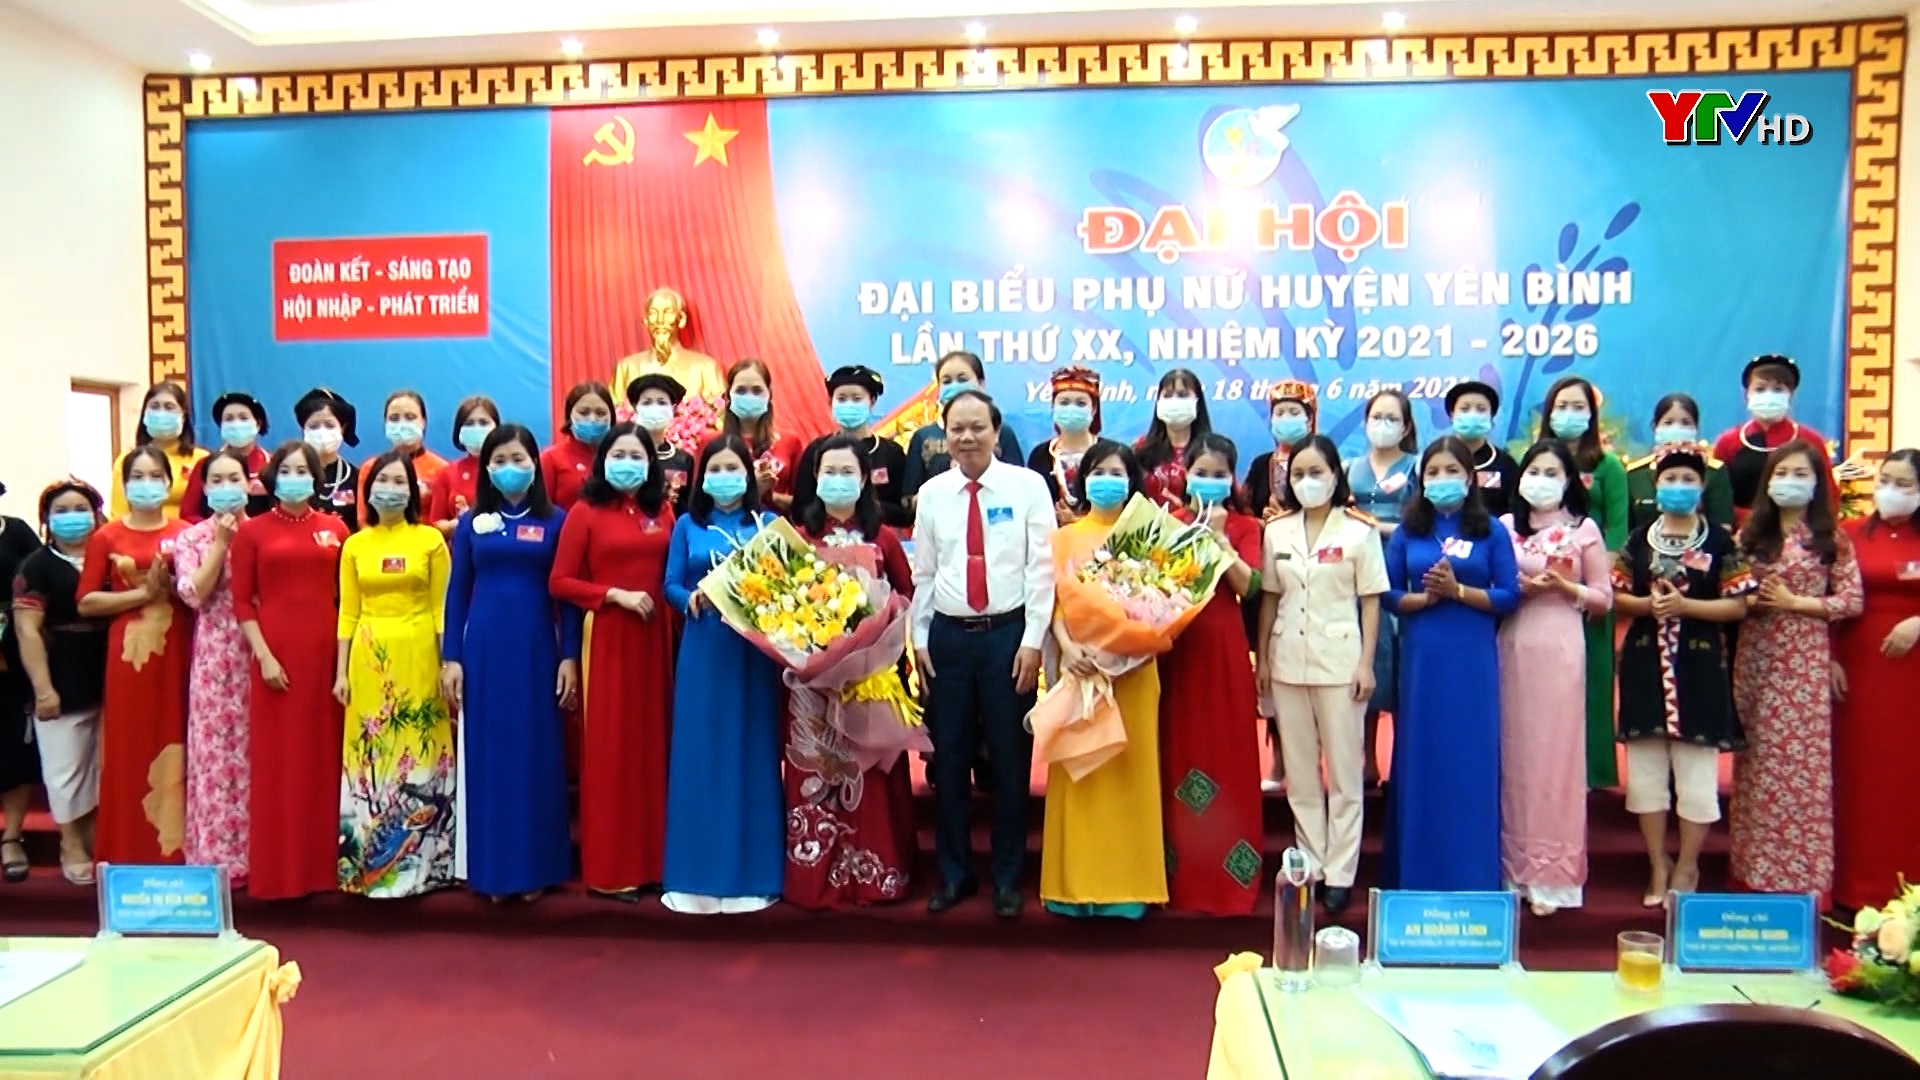 Đại hội đại biểu Phụ nữ huyện Yên Bình nhiệm kỳ 2021-2026.